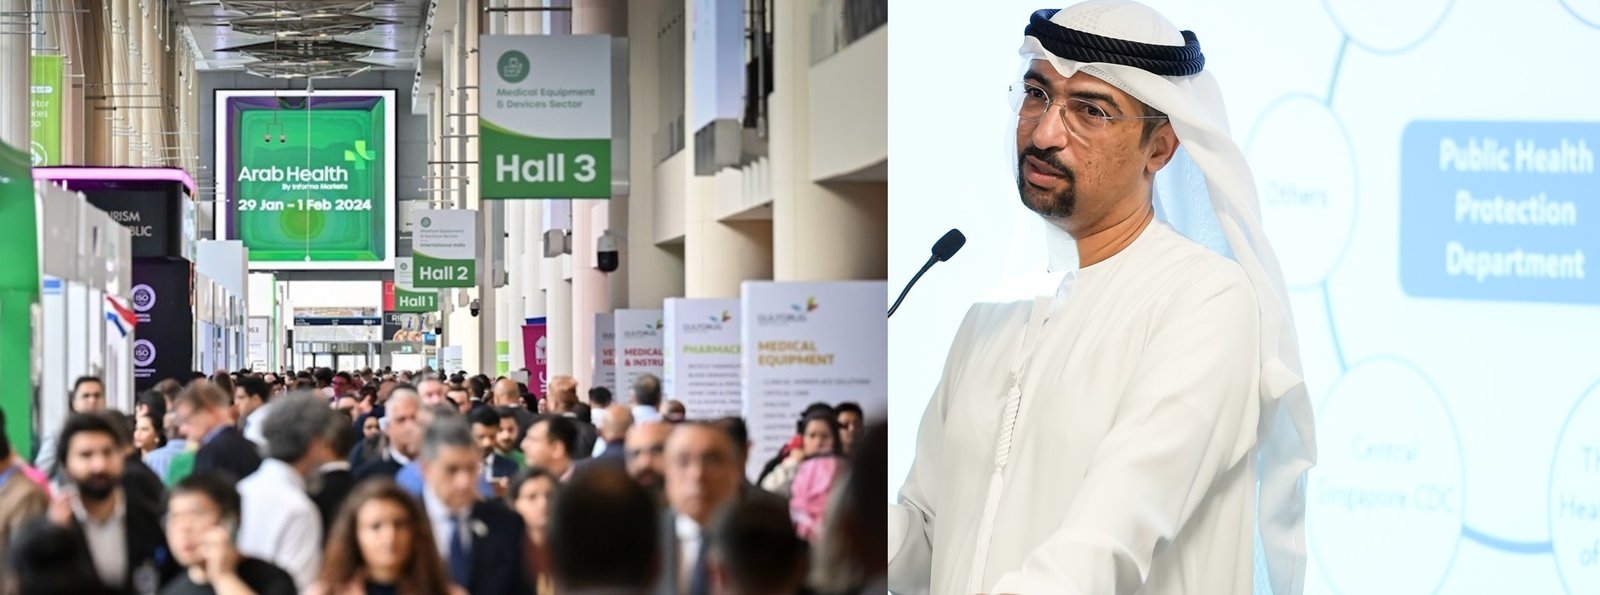 تؤكد السلطات الصحية في دولة الإمارات العربية المتحدة على النهج التعاوني والأولويات المستقبلية